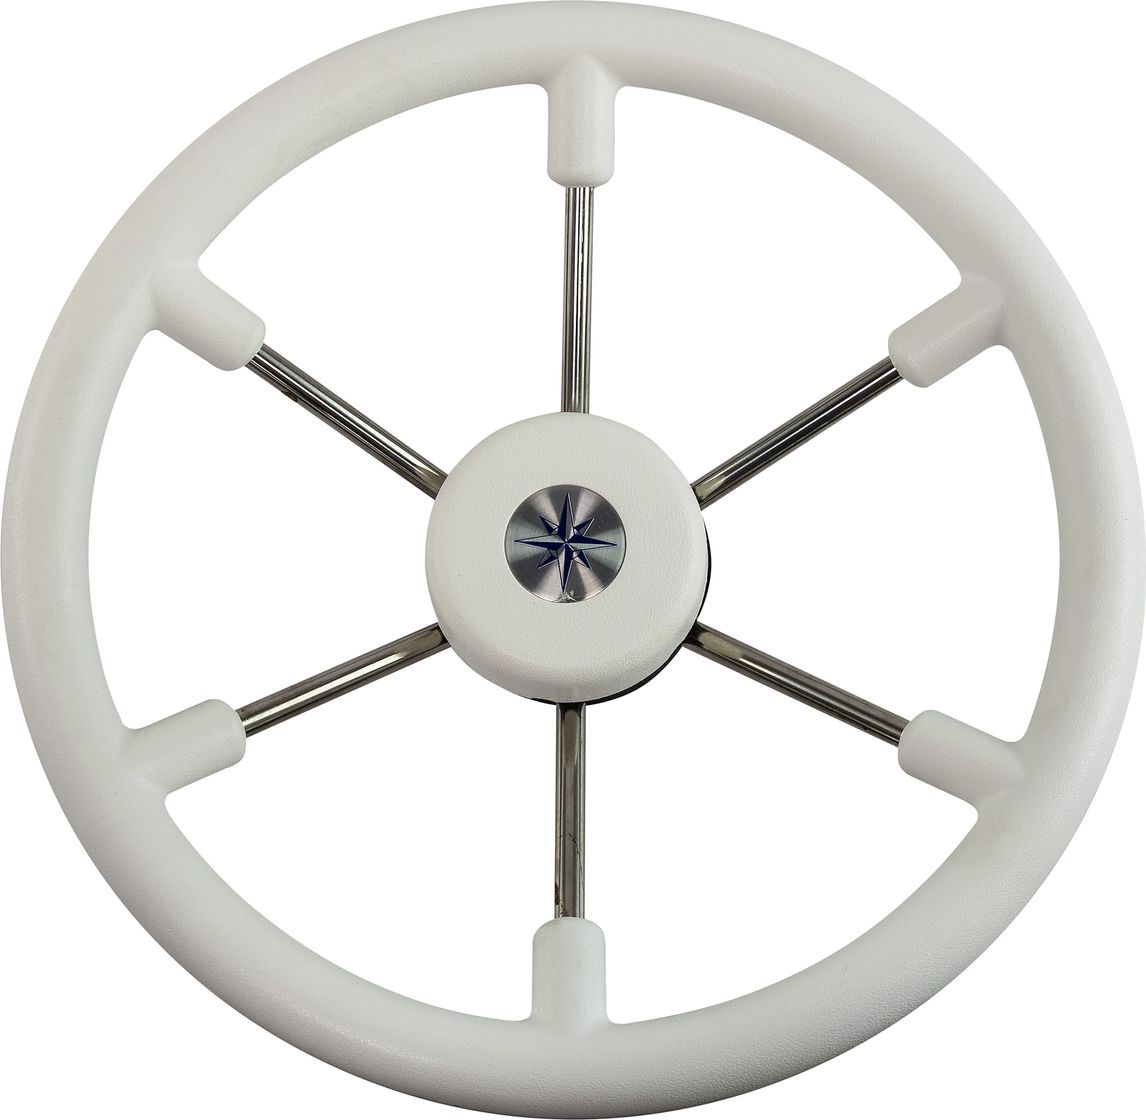 Рулевое колесо LEADER TANEGUM белый обод серебряные спицы д. 360 мм VN7360-08 рулевое колесо matrix белый обод more 10016474